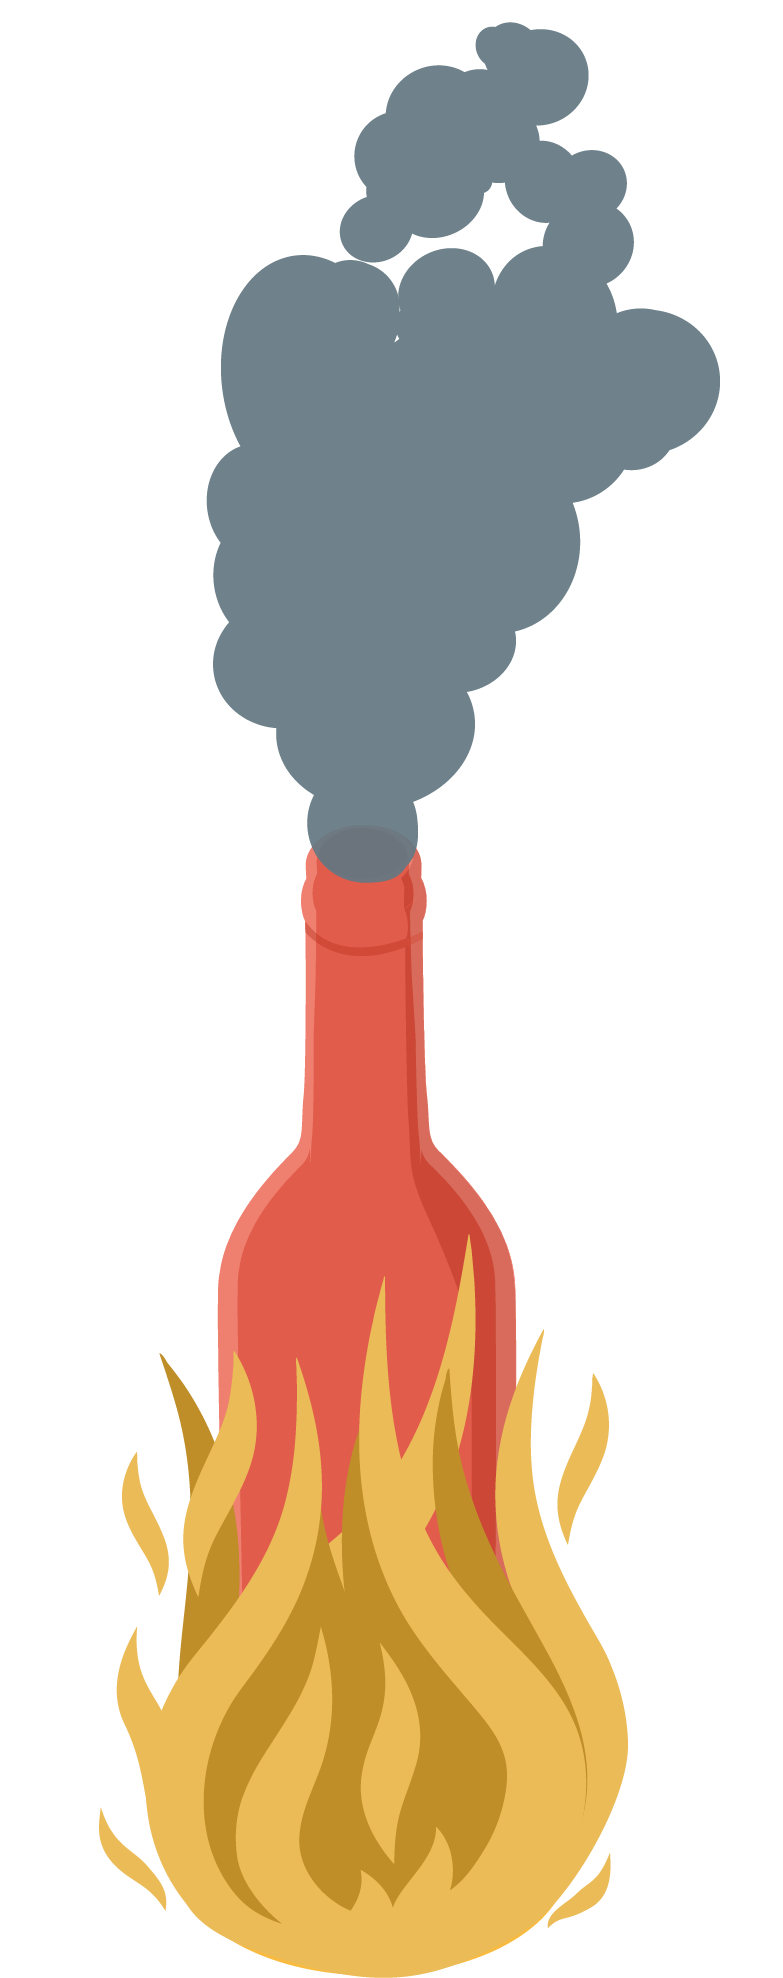 Image d'une bouteille en feu avec de la fumée